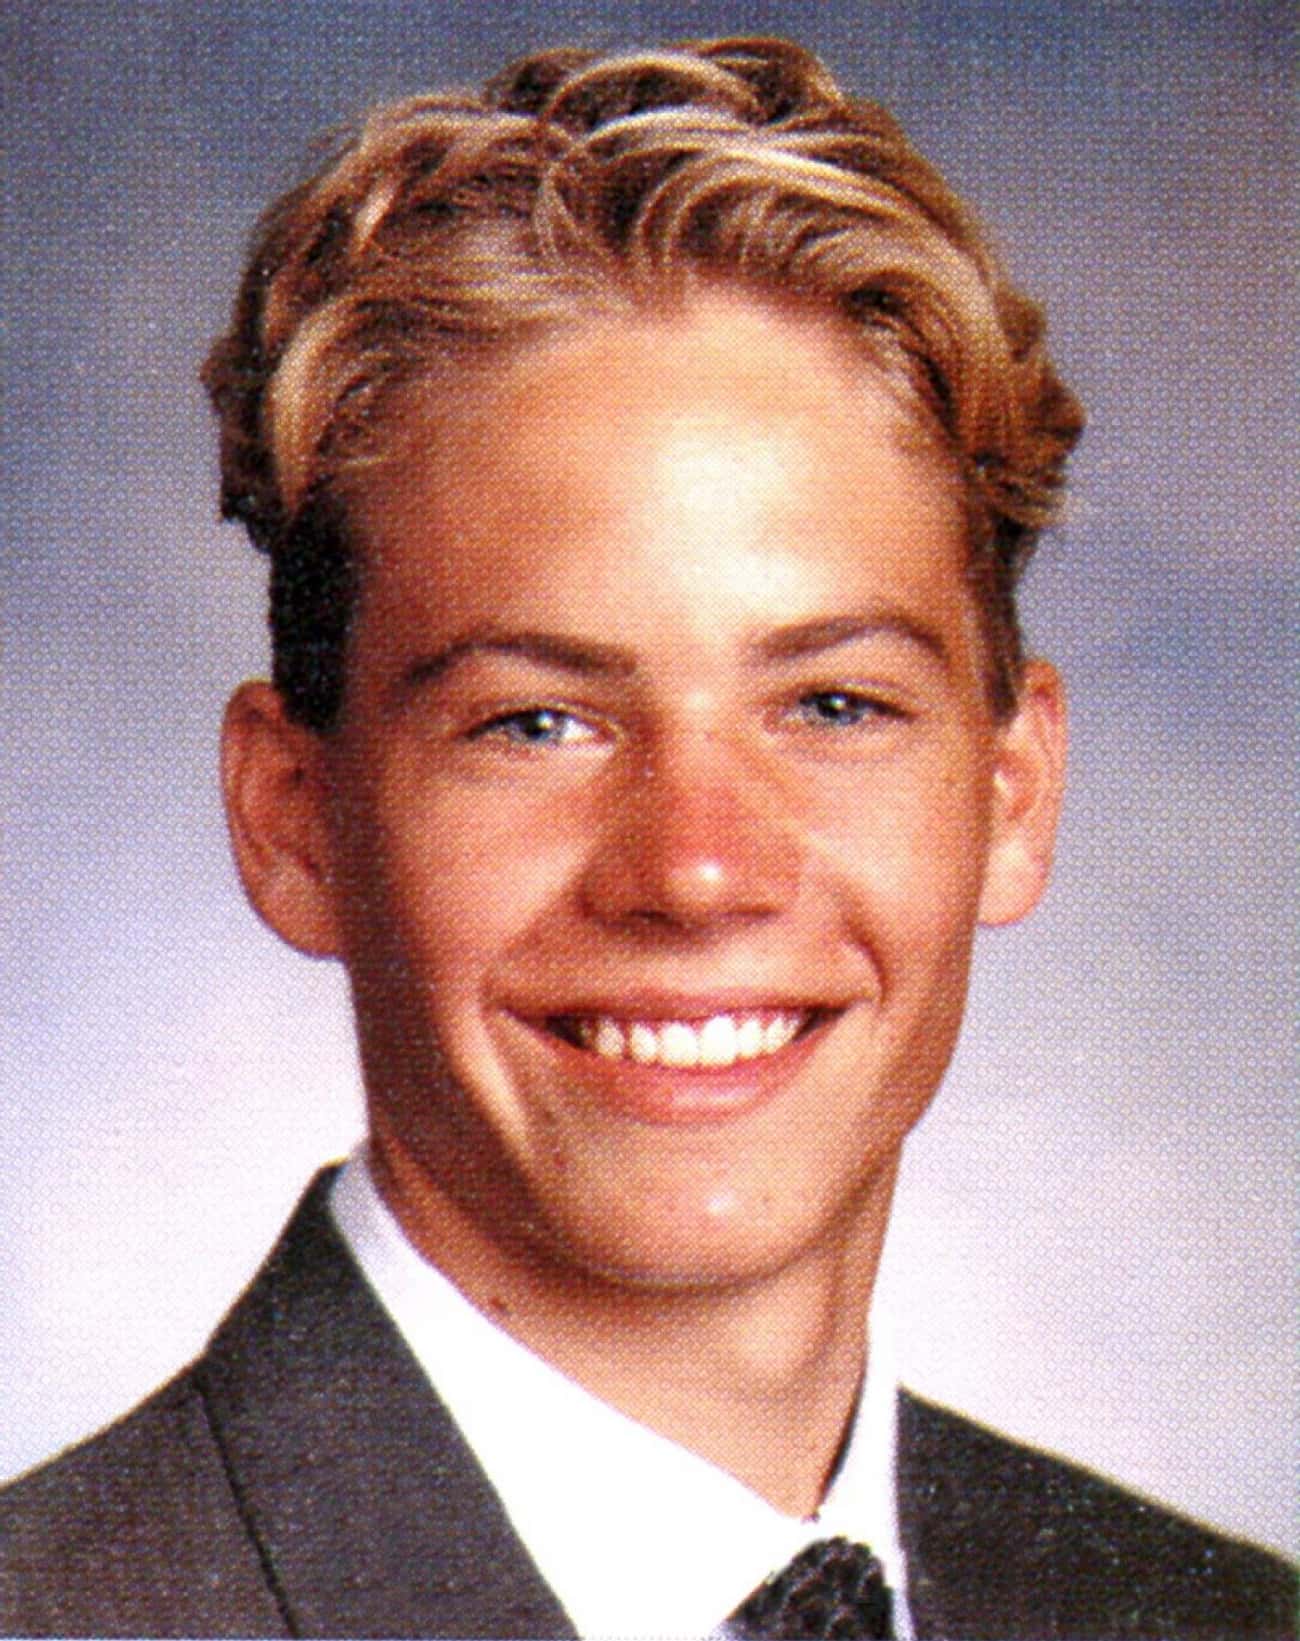 Young Paul Walker in Suit High School Photo